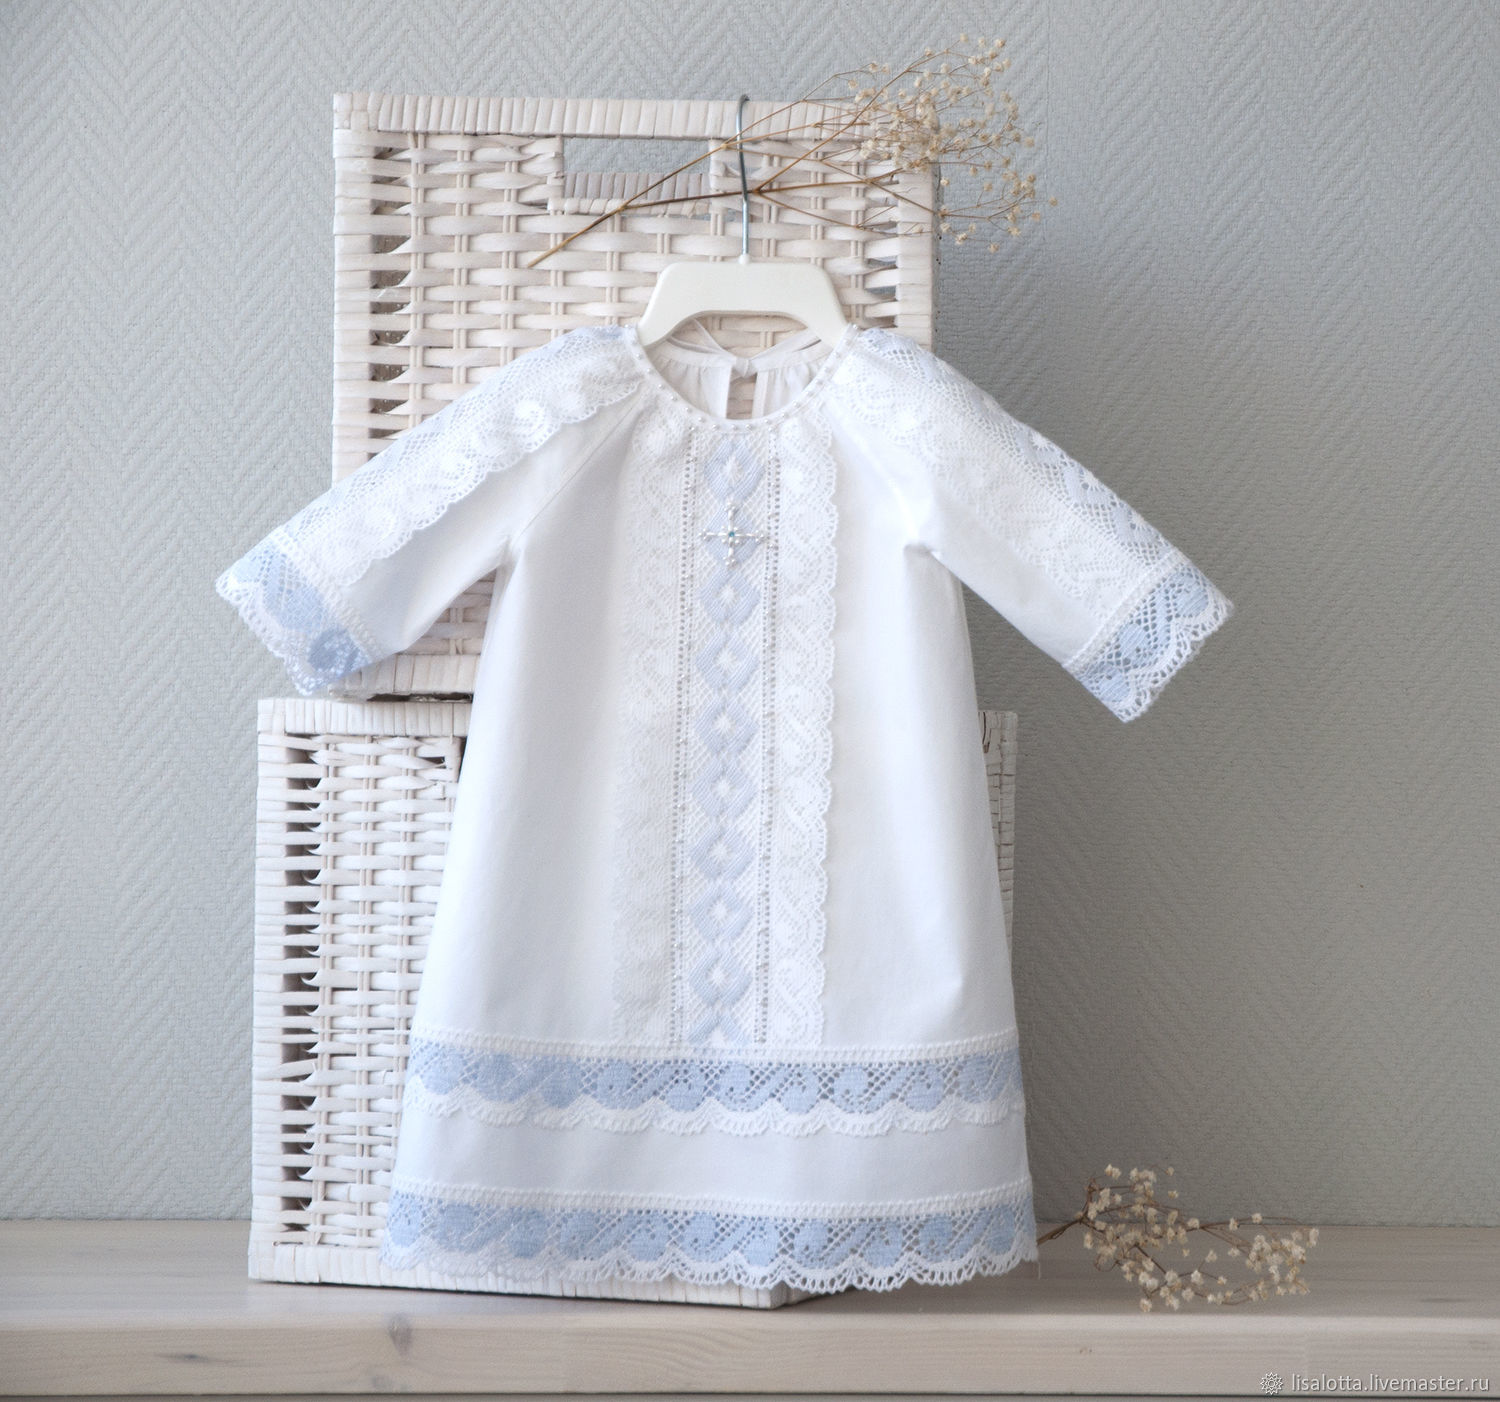 КУПИТЬ или ПОШИТЬ: рубашка для крещения - крестильные рубашки из батиста и шелка